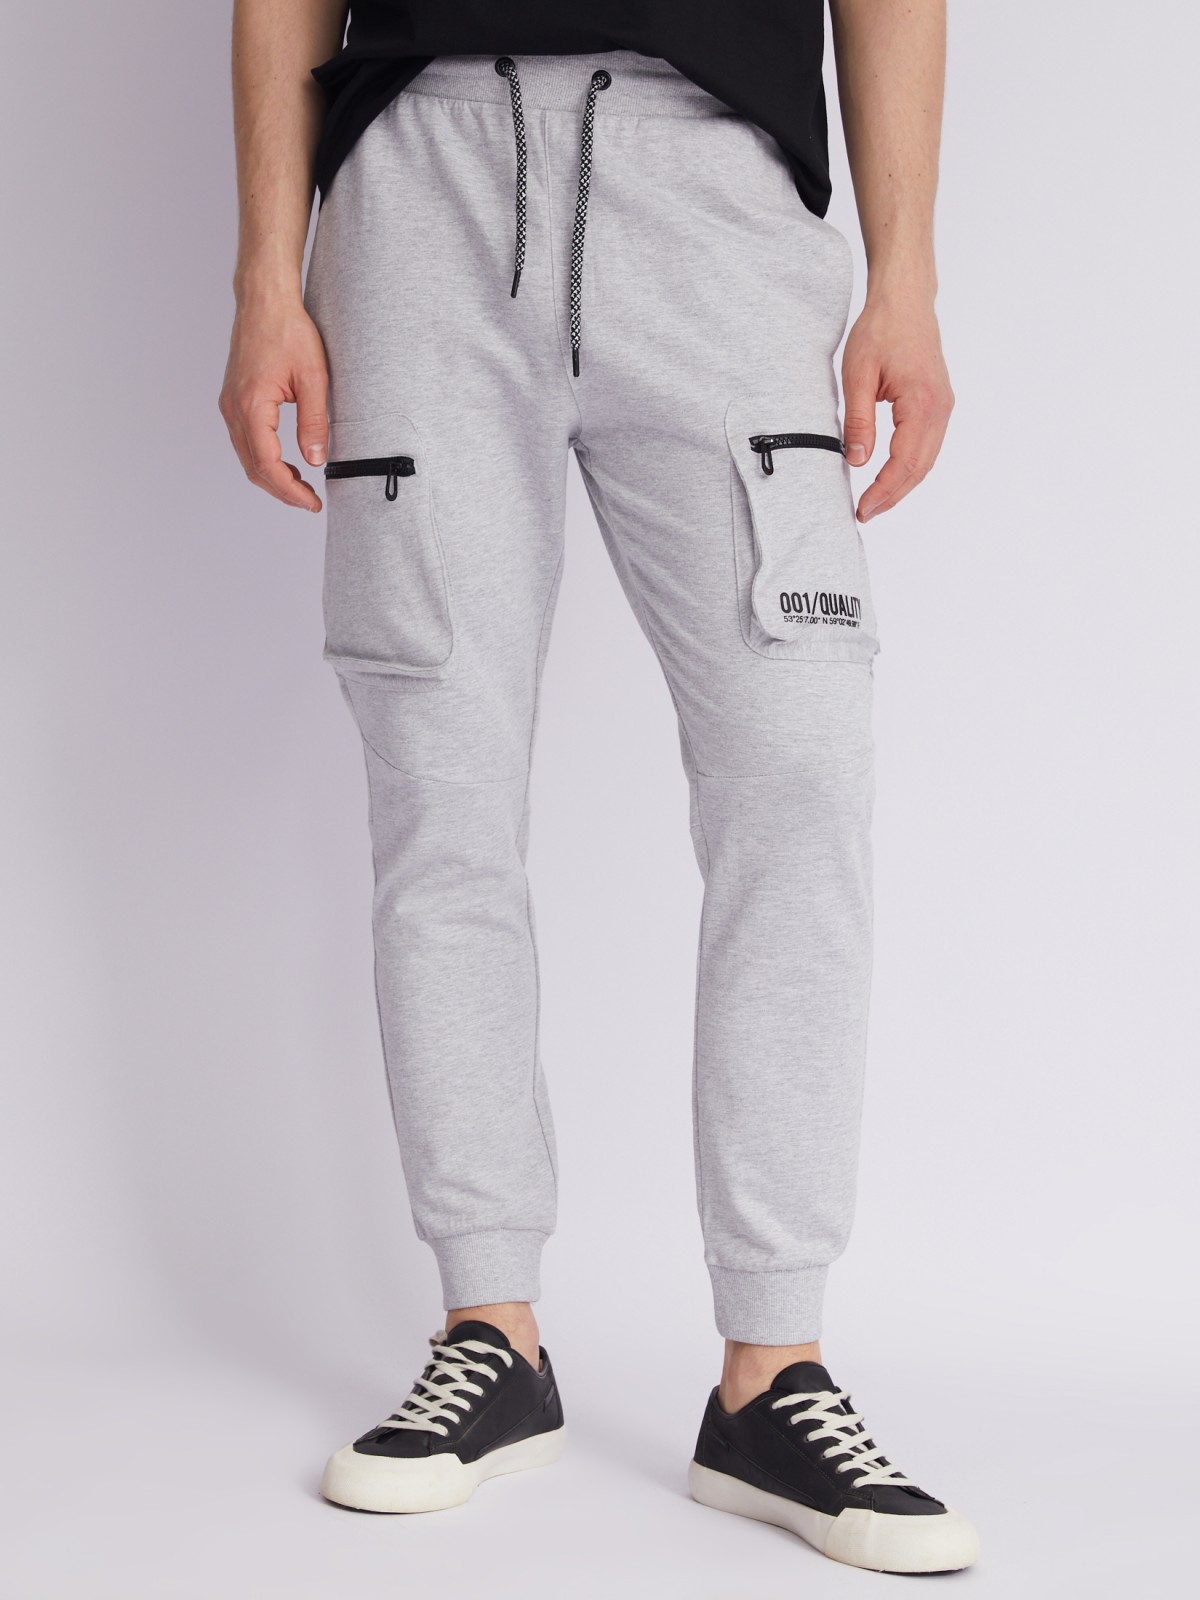 Трикотажные брюки-джоггеры с карманами карго zolla 21231768Q101, цвет серый, размер S - фото 2